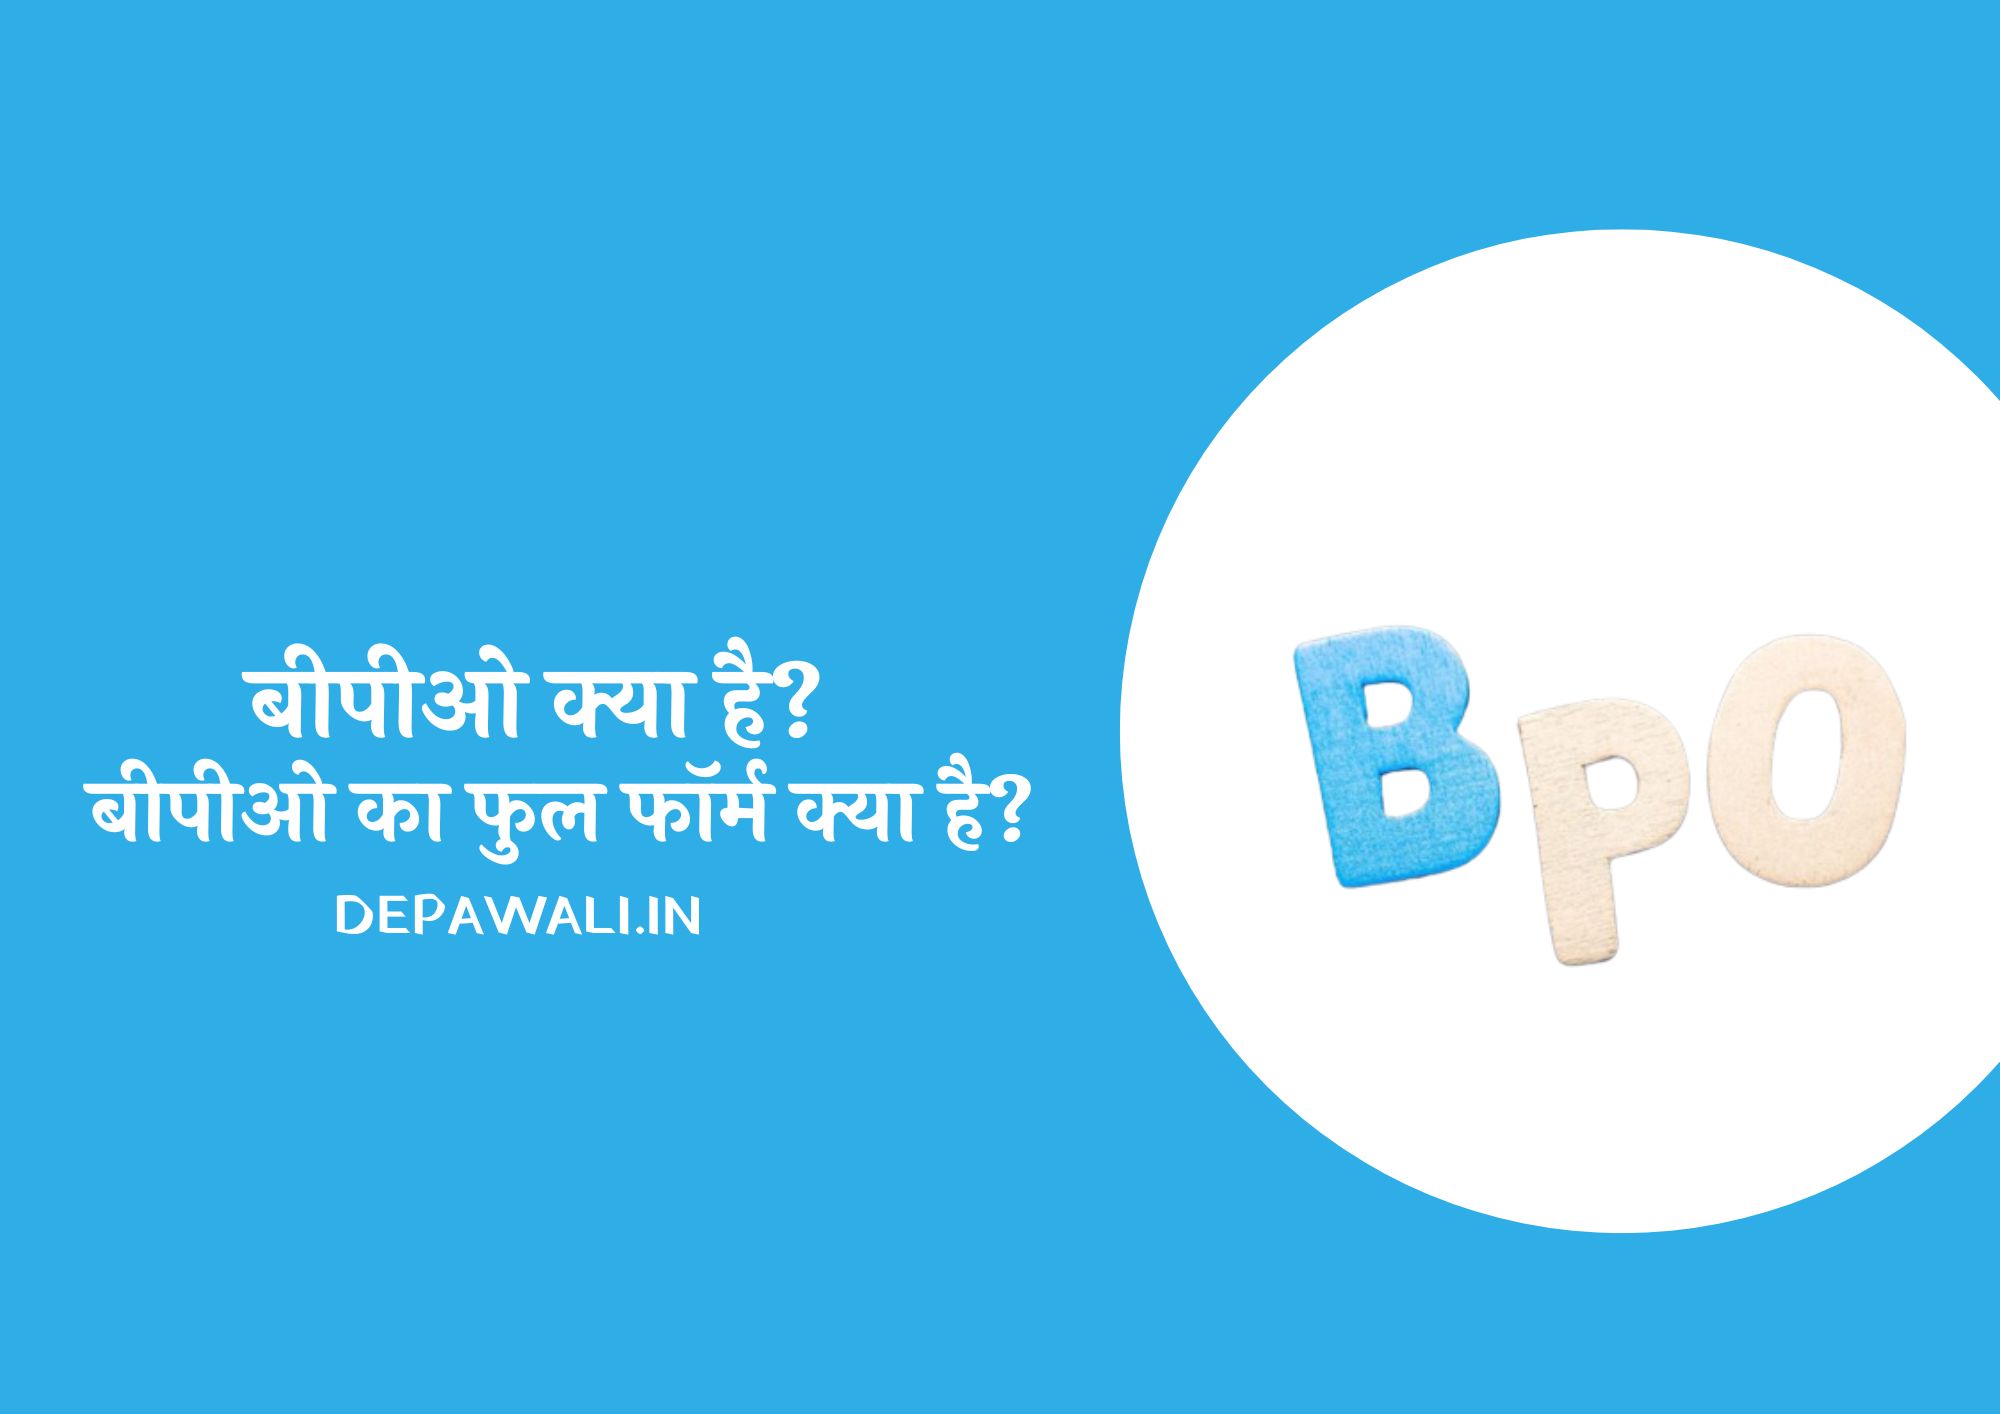 बीपीओ क्या है और बीपीओ का फुल फॉर्म क्या होता है (Full Form Of BPO In Hindi) - BPO Ka Full Form Kya Hai In Hindi